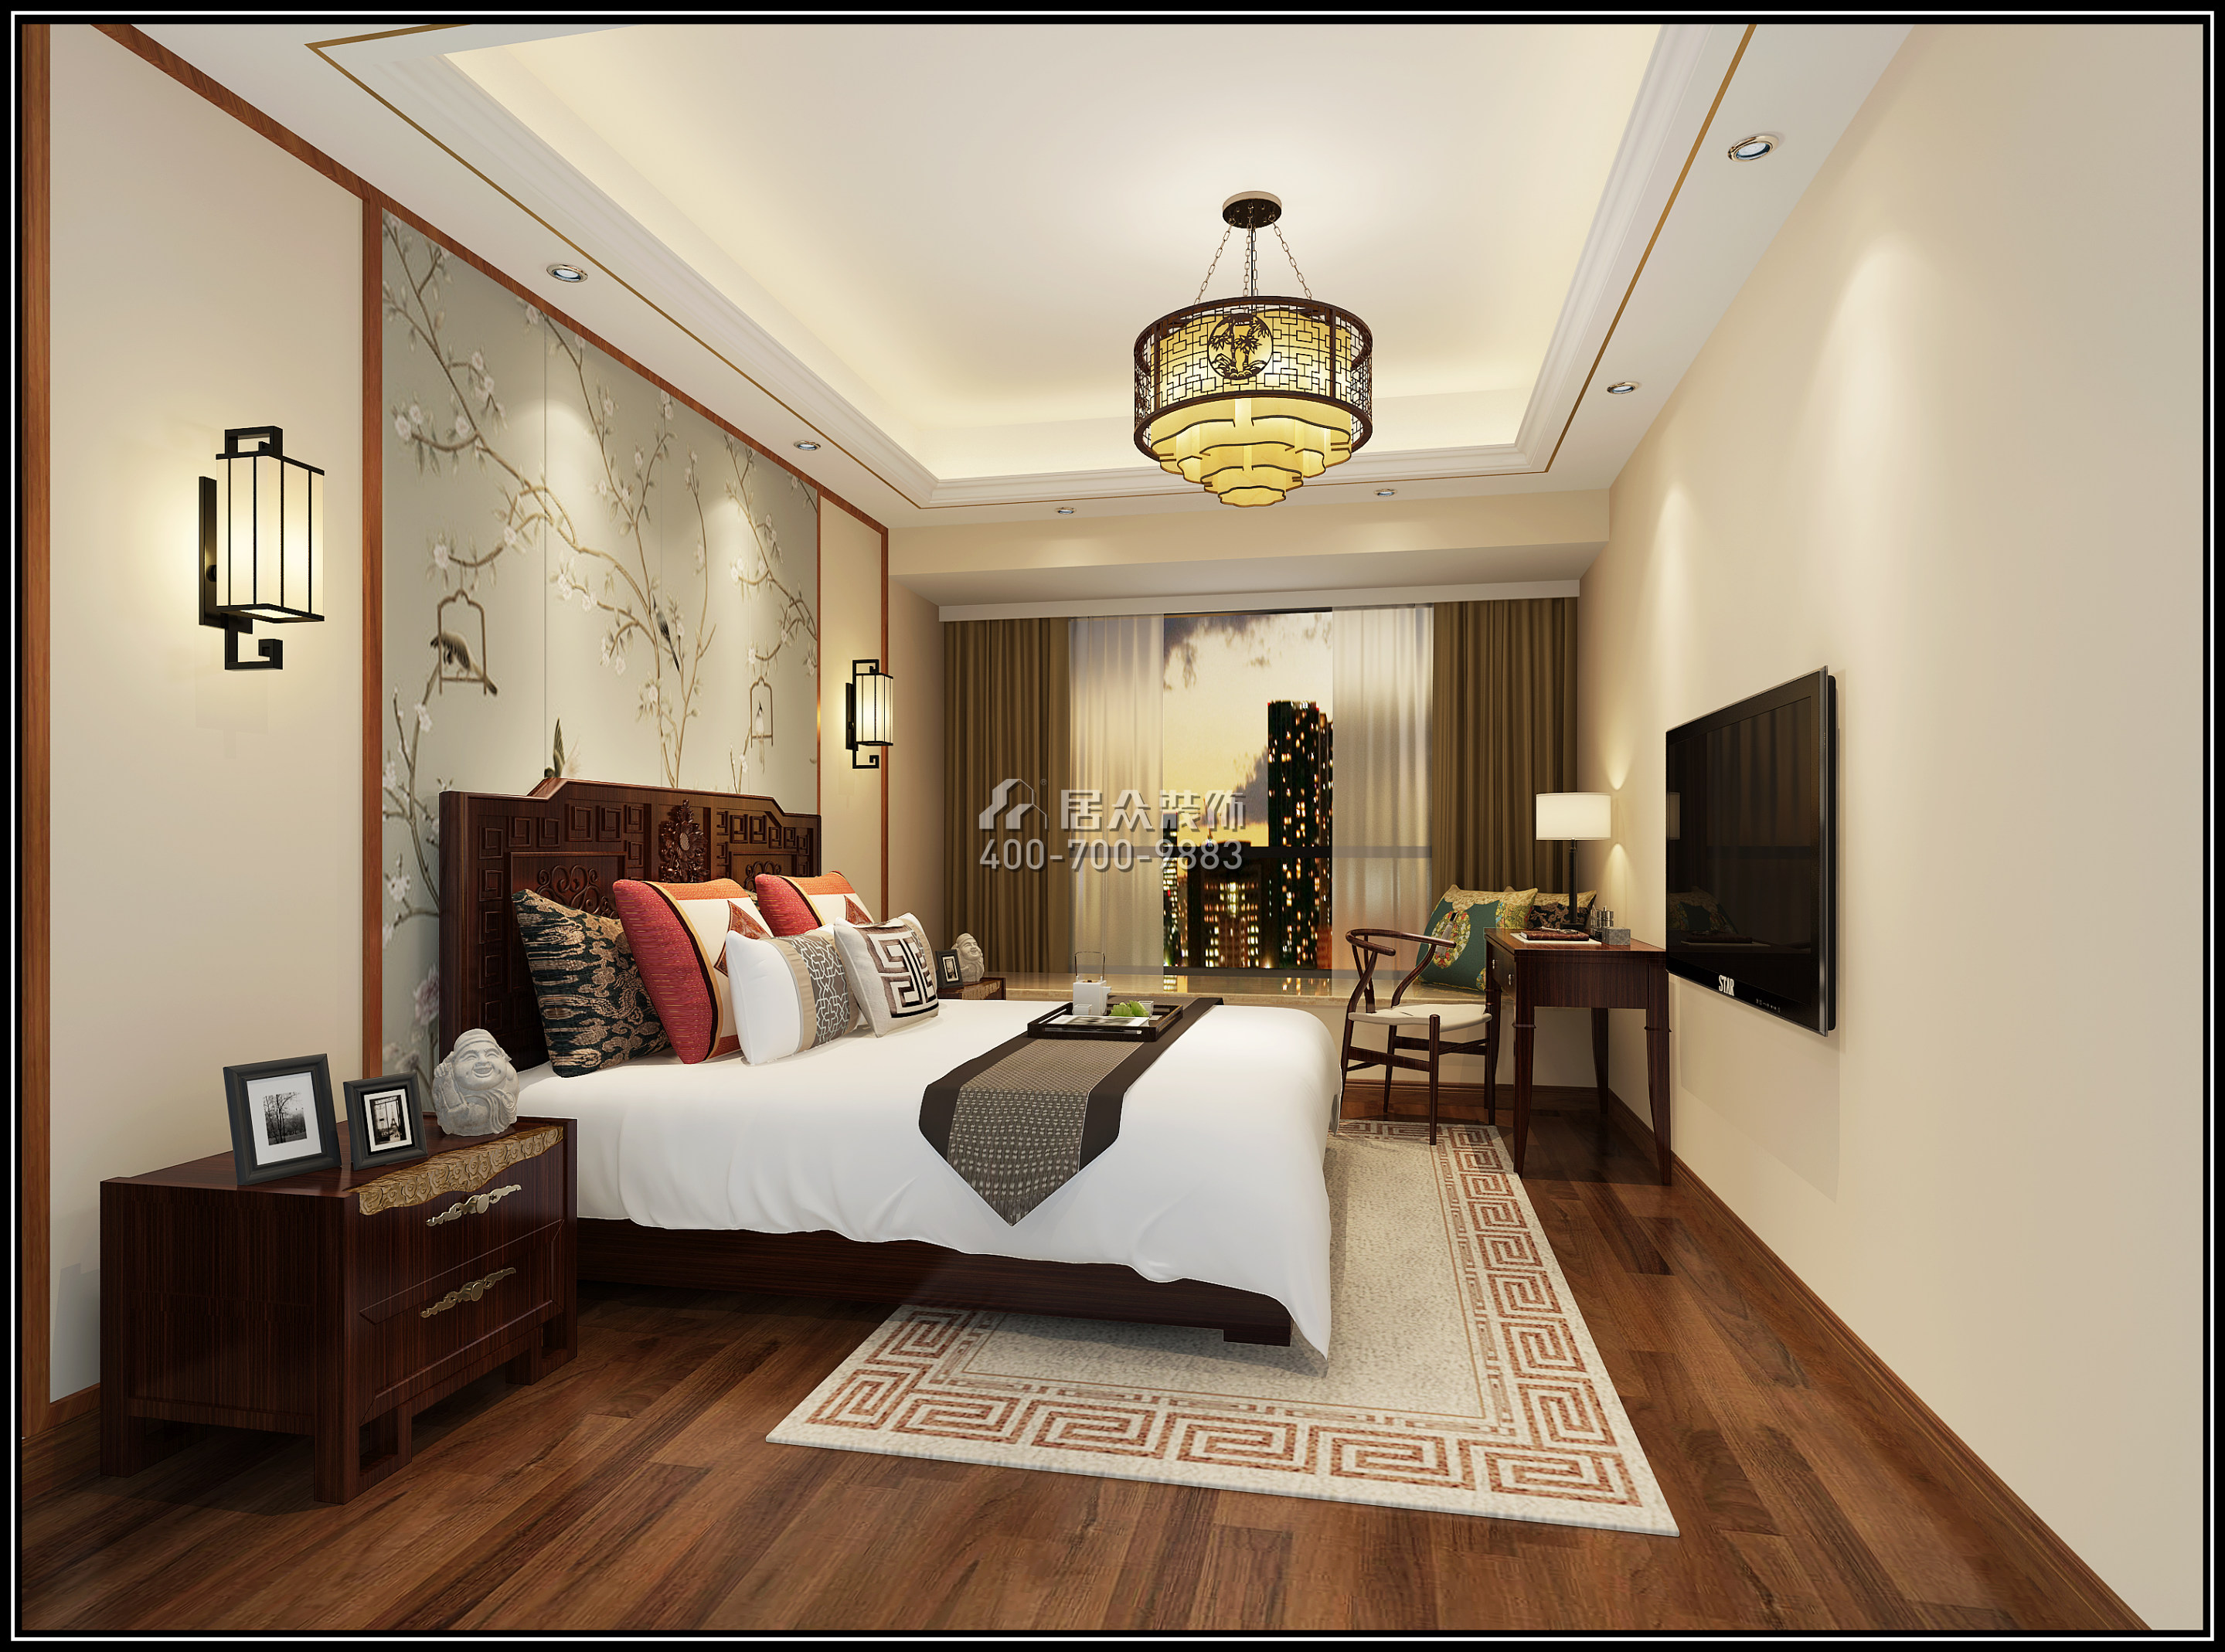 华润城润府150平方米中式风格平层户型卧室装修效果图